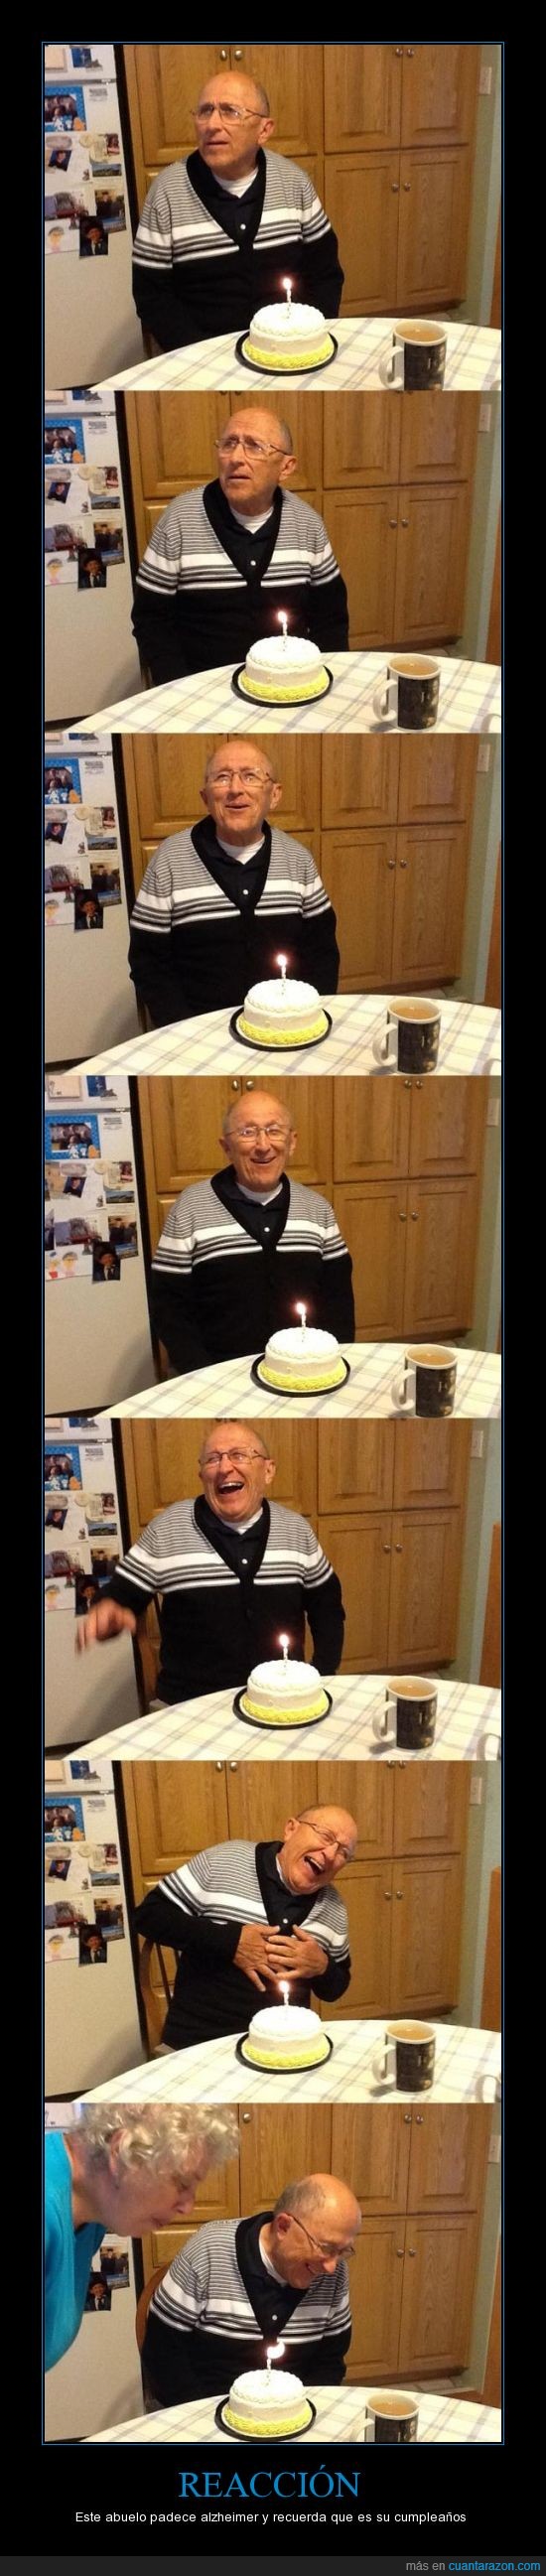 donde esta el logro?,torta,cumpleaños,alzheimer,abuelo,me emocione al ver las imagenes